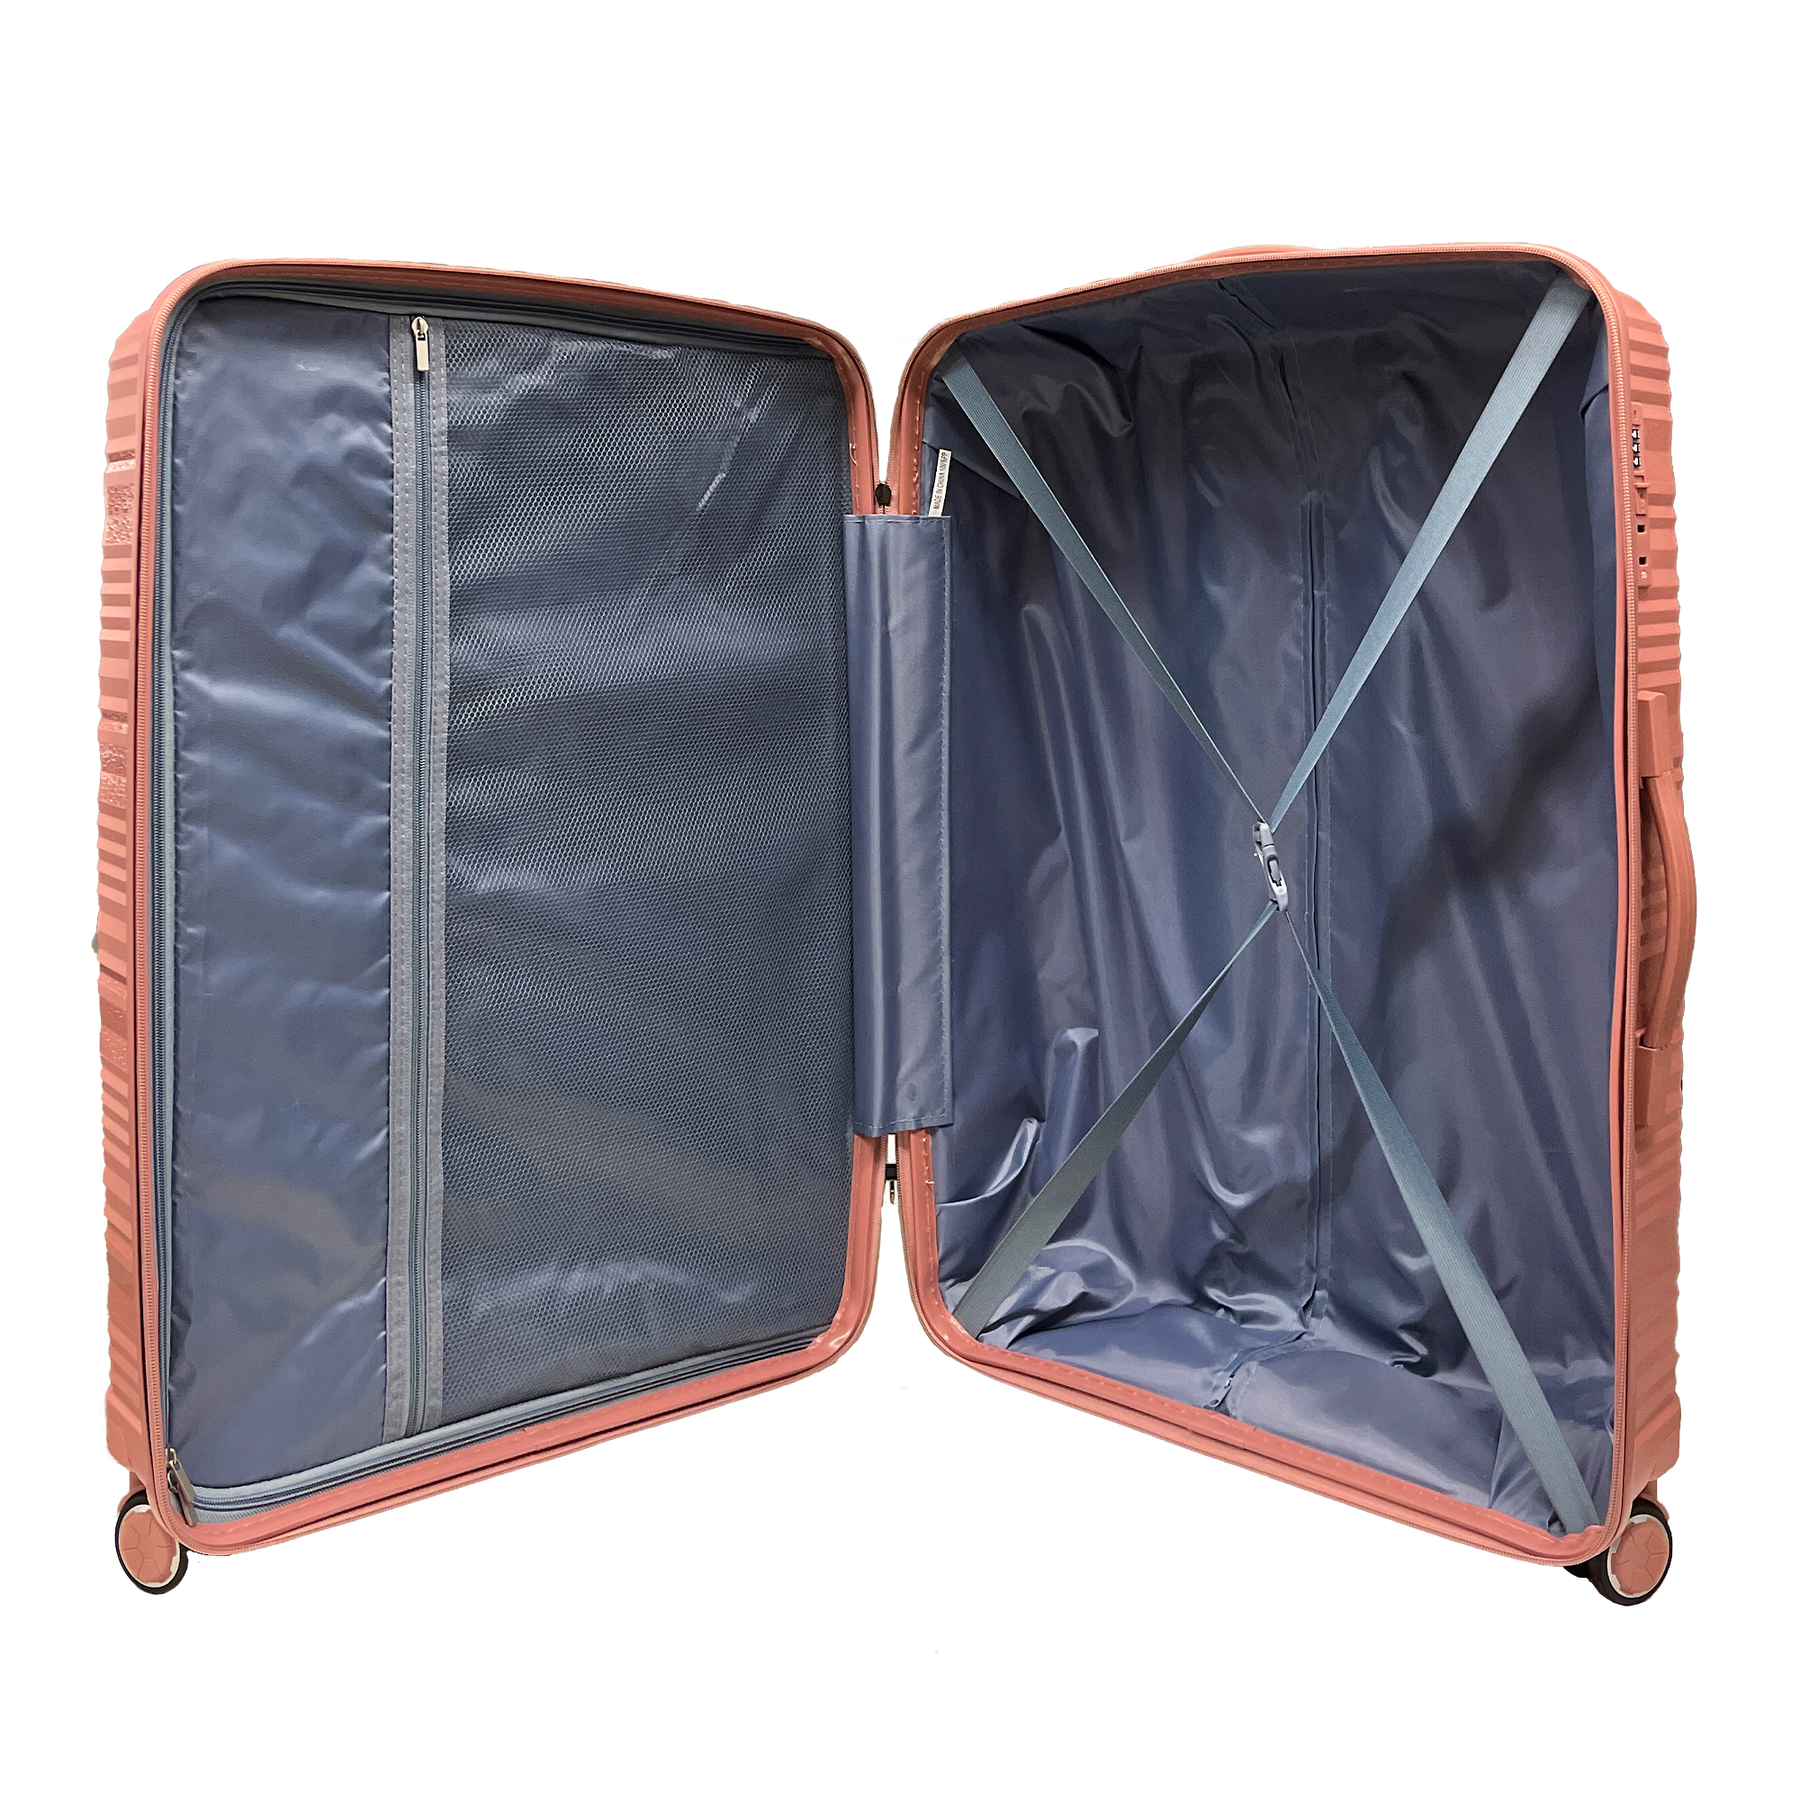 Duża walizka z polipropylenu odporna na uderzenia z wbudowanym zamkiem TSA